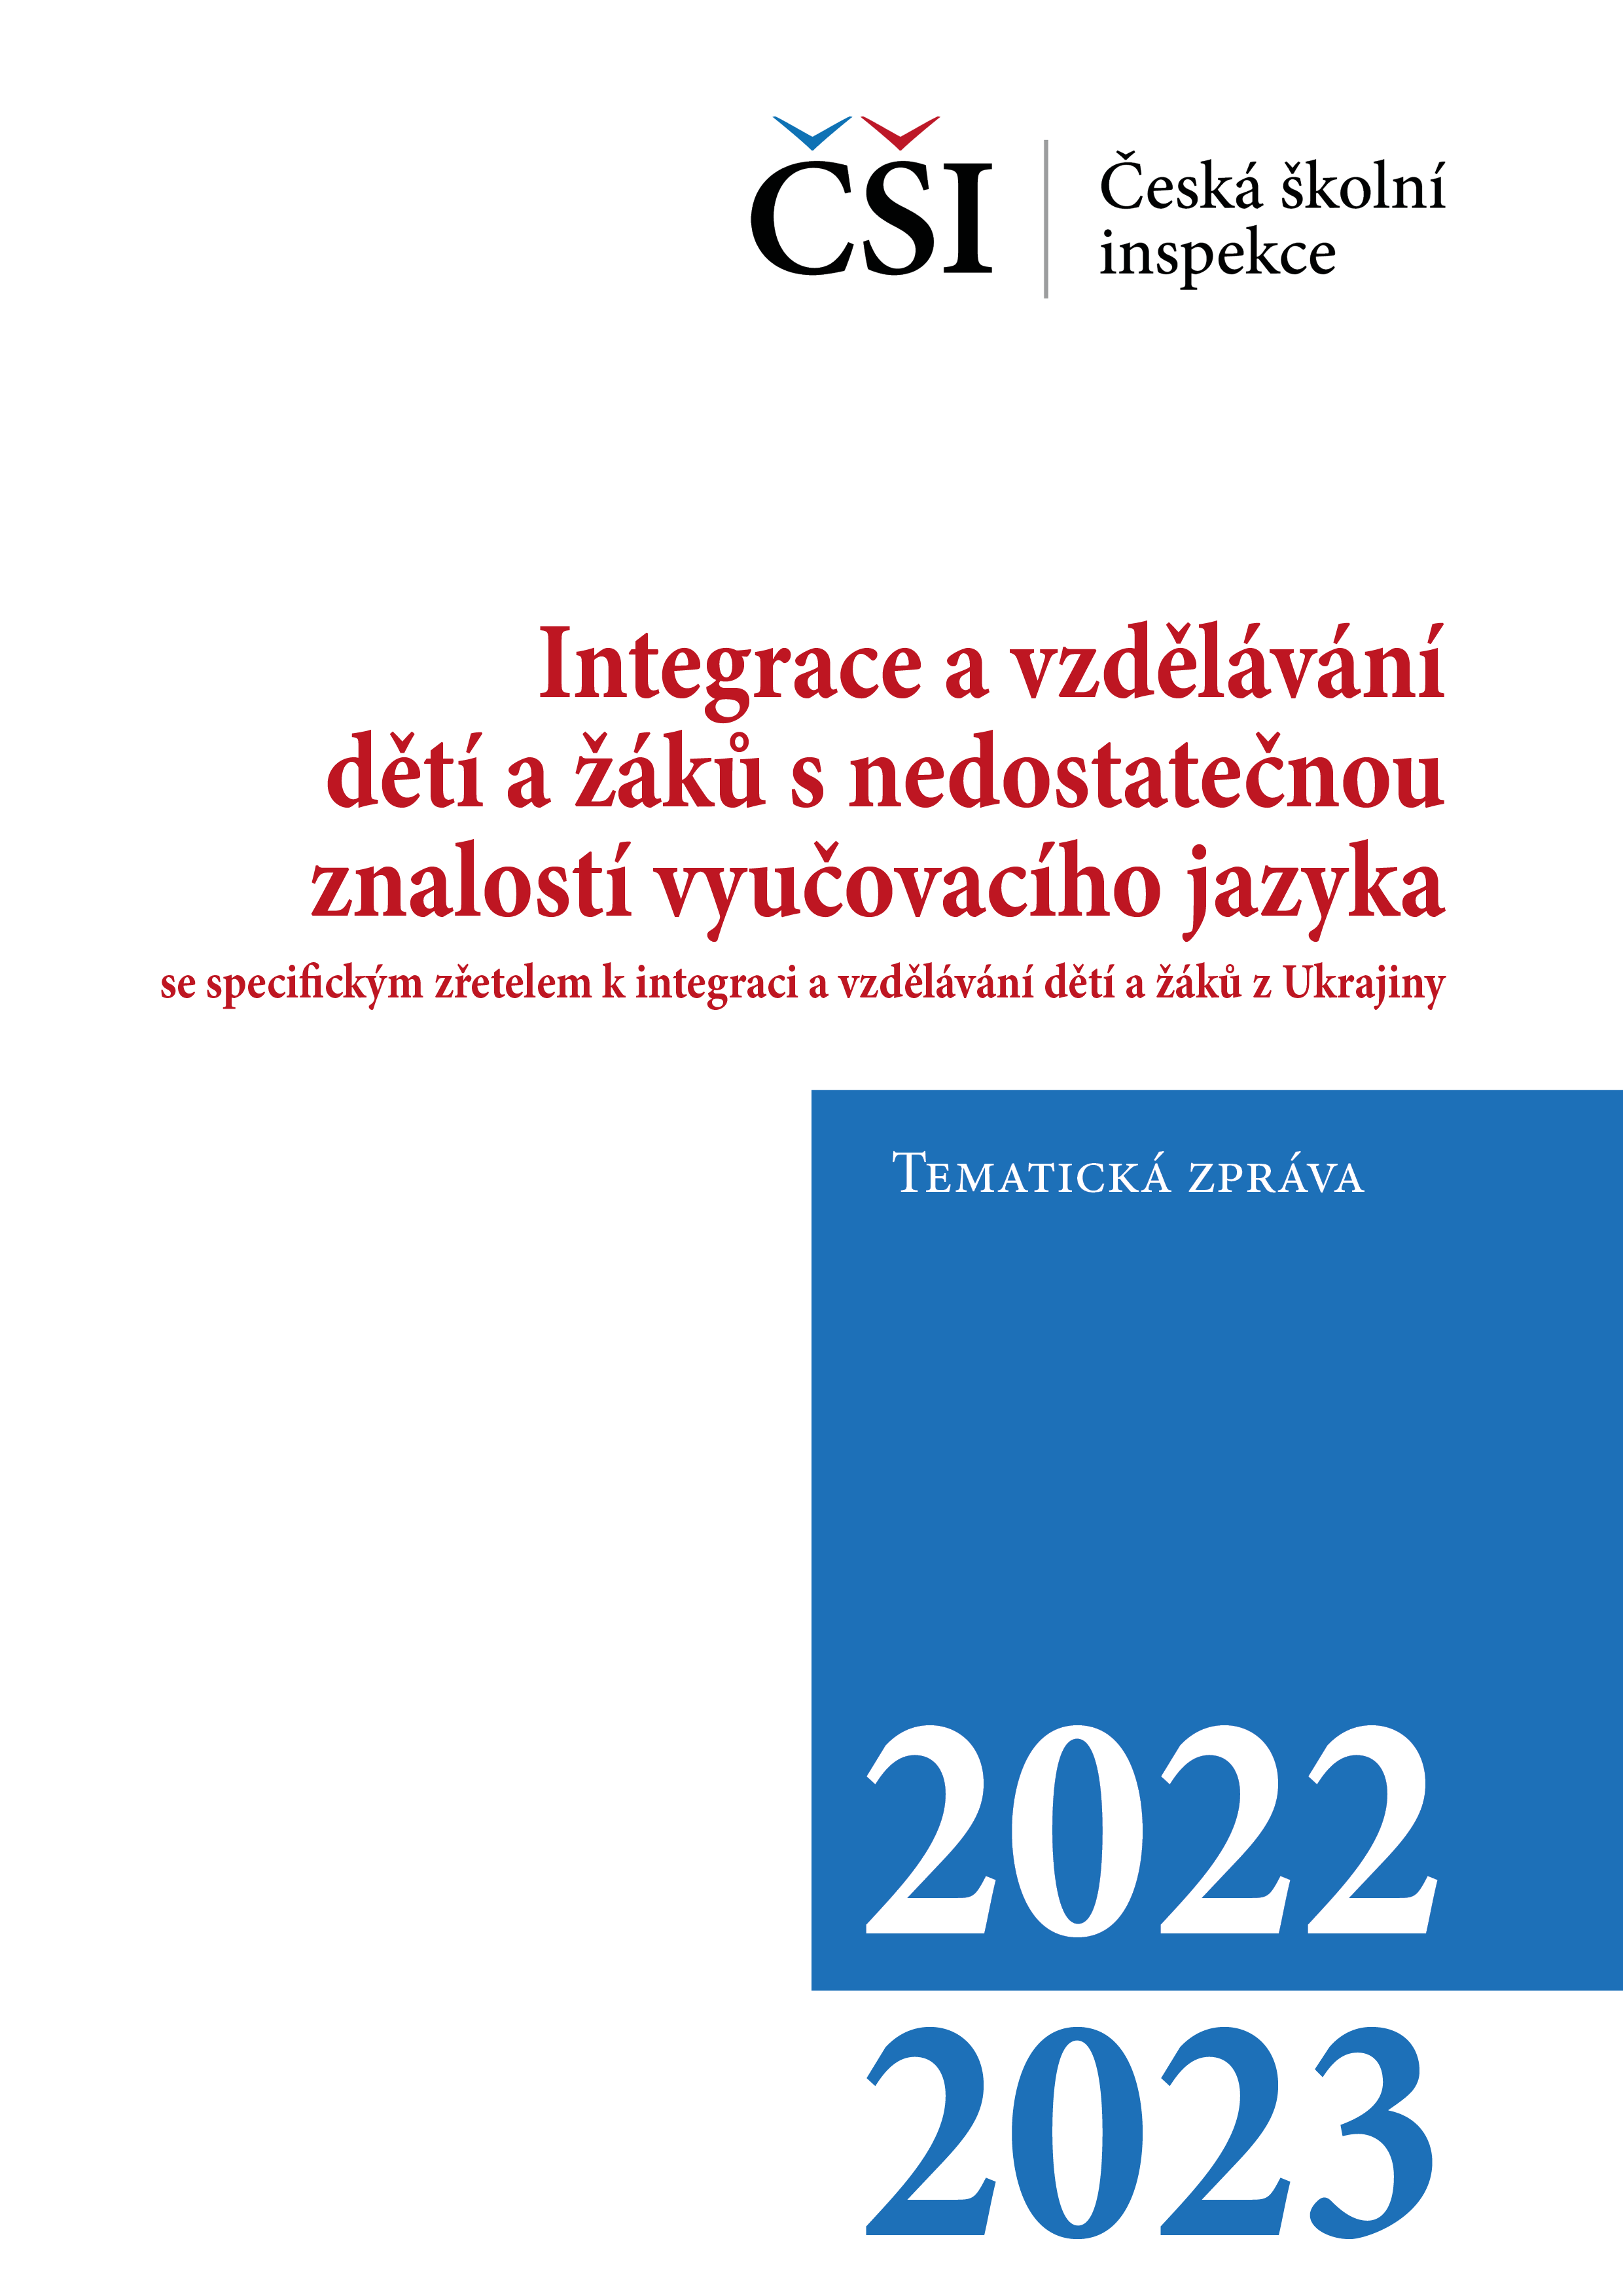 Tematická zpráva – Integrace a vzdělávání dětí a žáků s nedostatečnou znalostí vyučovacího jazyka